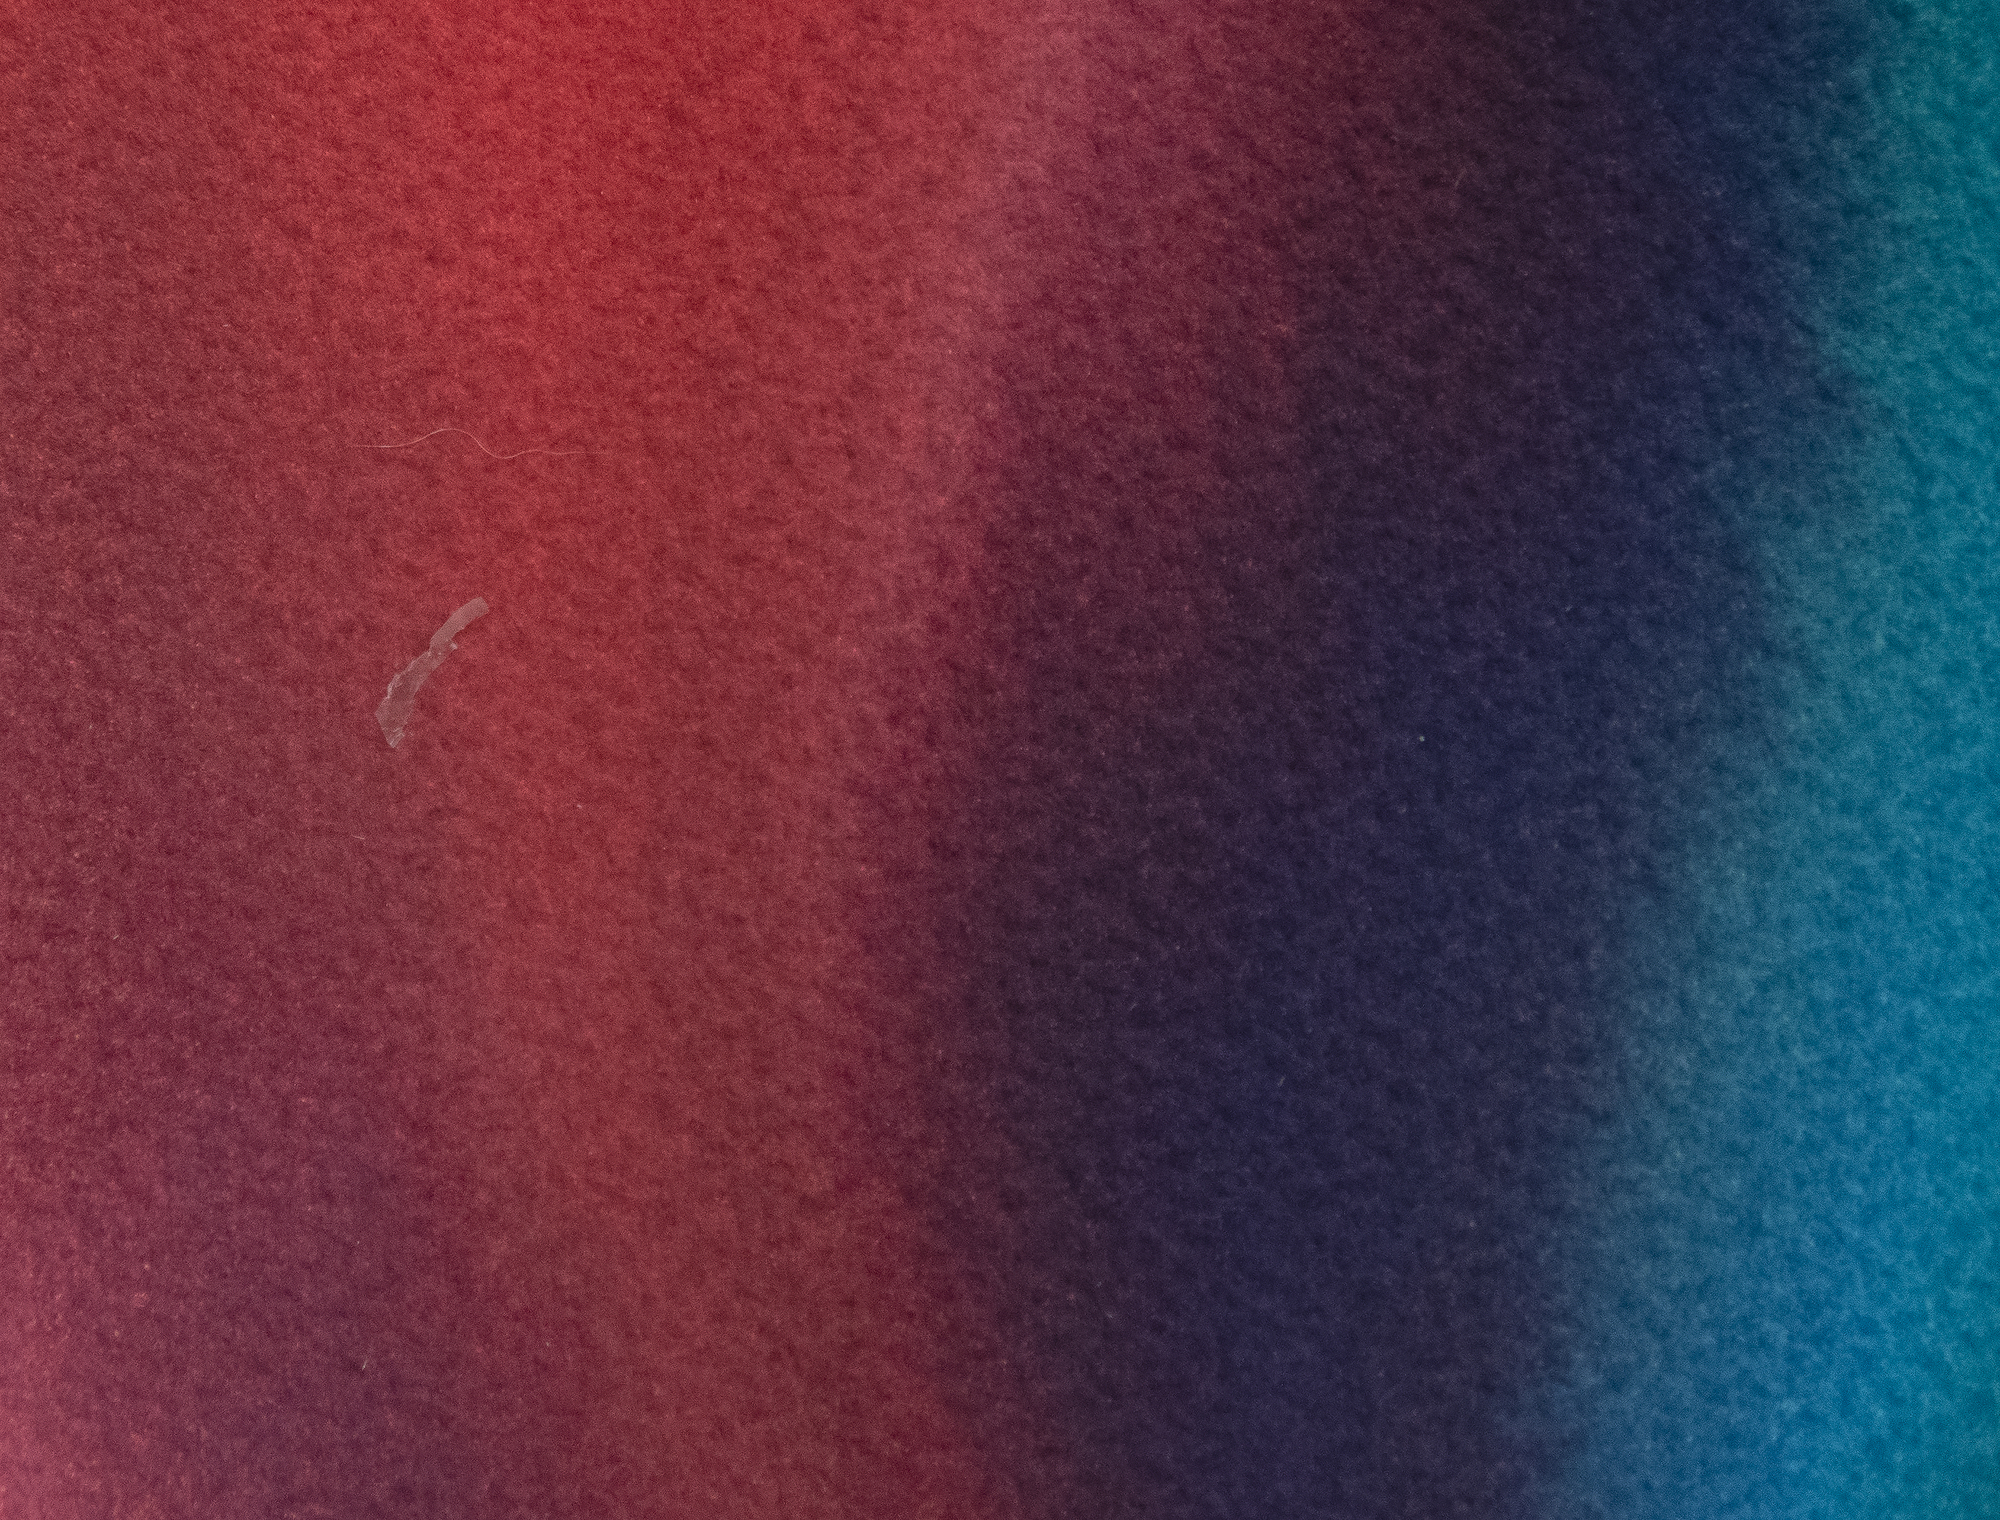 פול ג'נקינס - ללא כותרת - צבעי מים ודיו על נייר - 29 3/4 x 42 3/4 אינץ'.